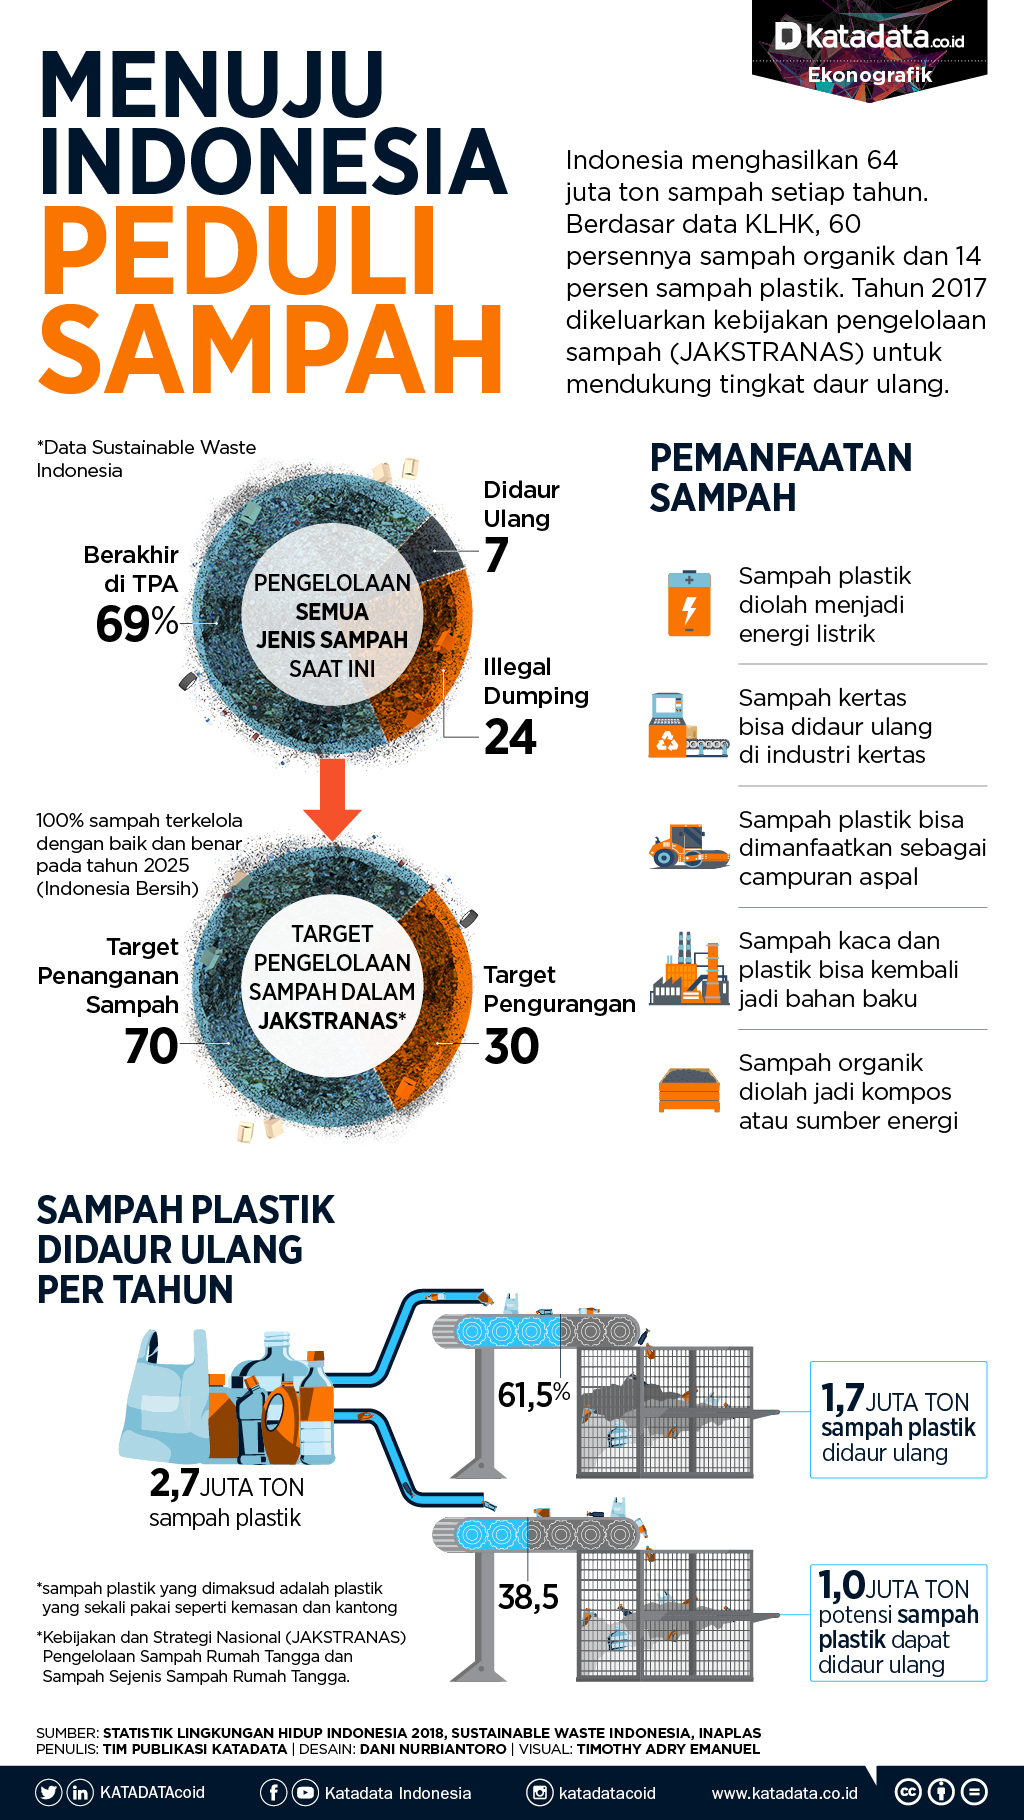 Menuju Indonesia Peduli Sampah